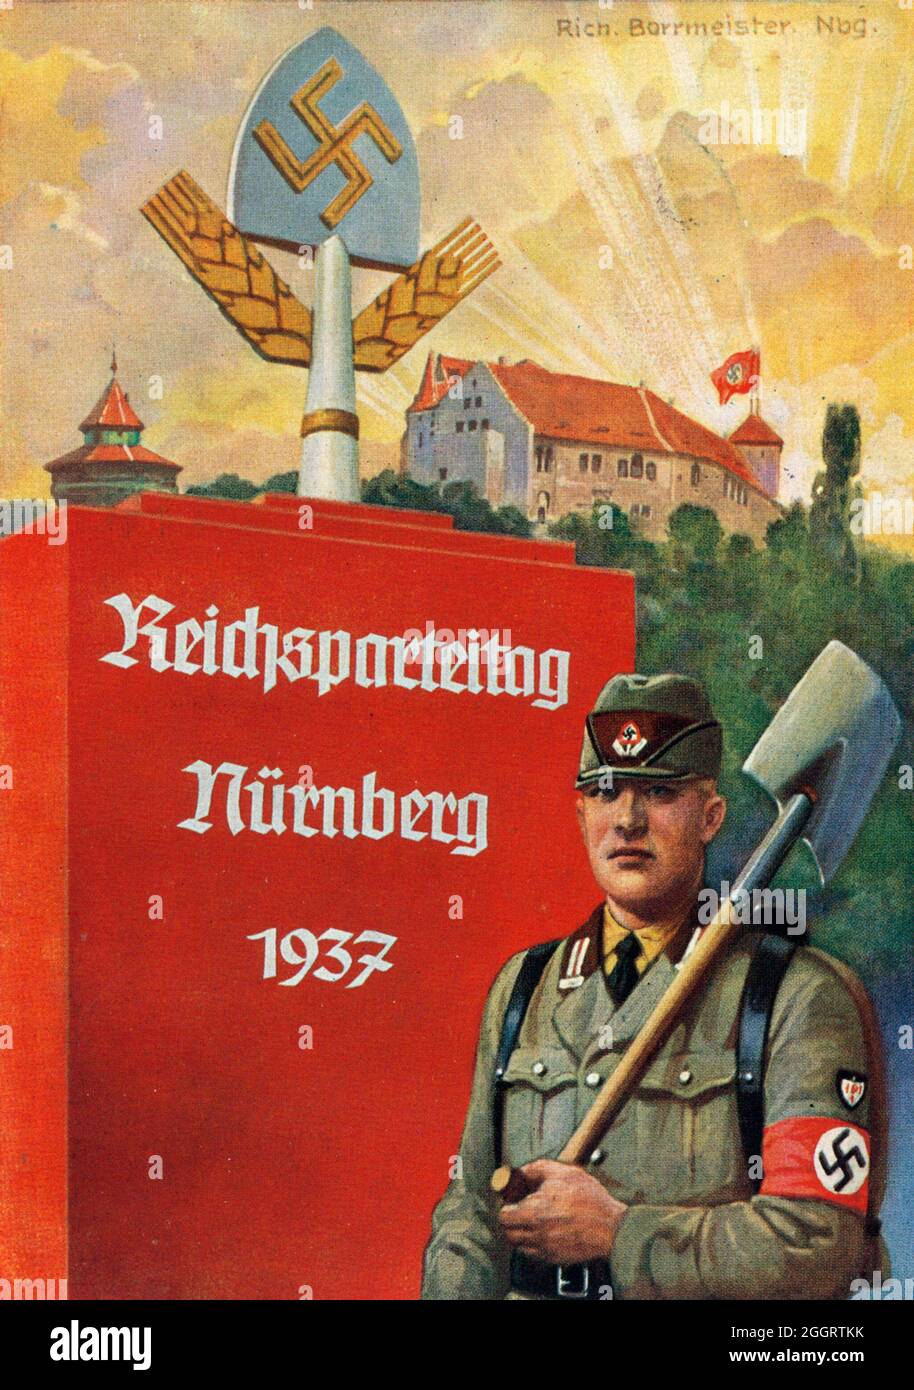 Une affiche ancienne pour le rallye de Nuremberg nazi annuel montrant un membre en uniforme du Reichsarbeitsdienst (RAD, Service allemand du travail) Banque D'Images